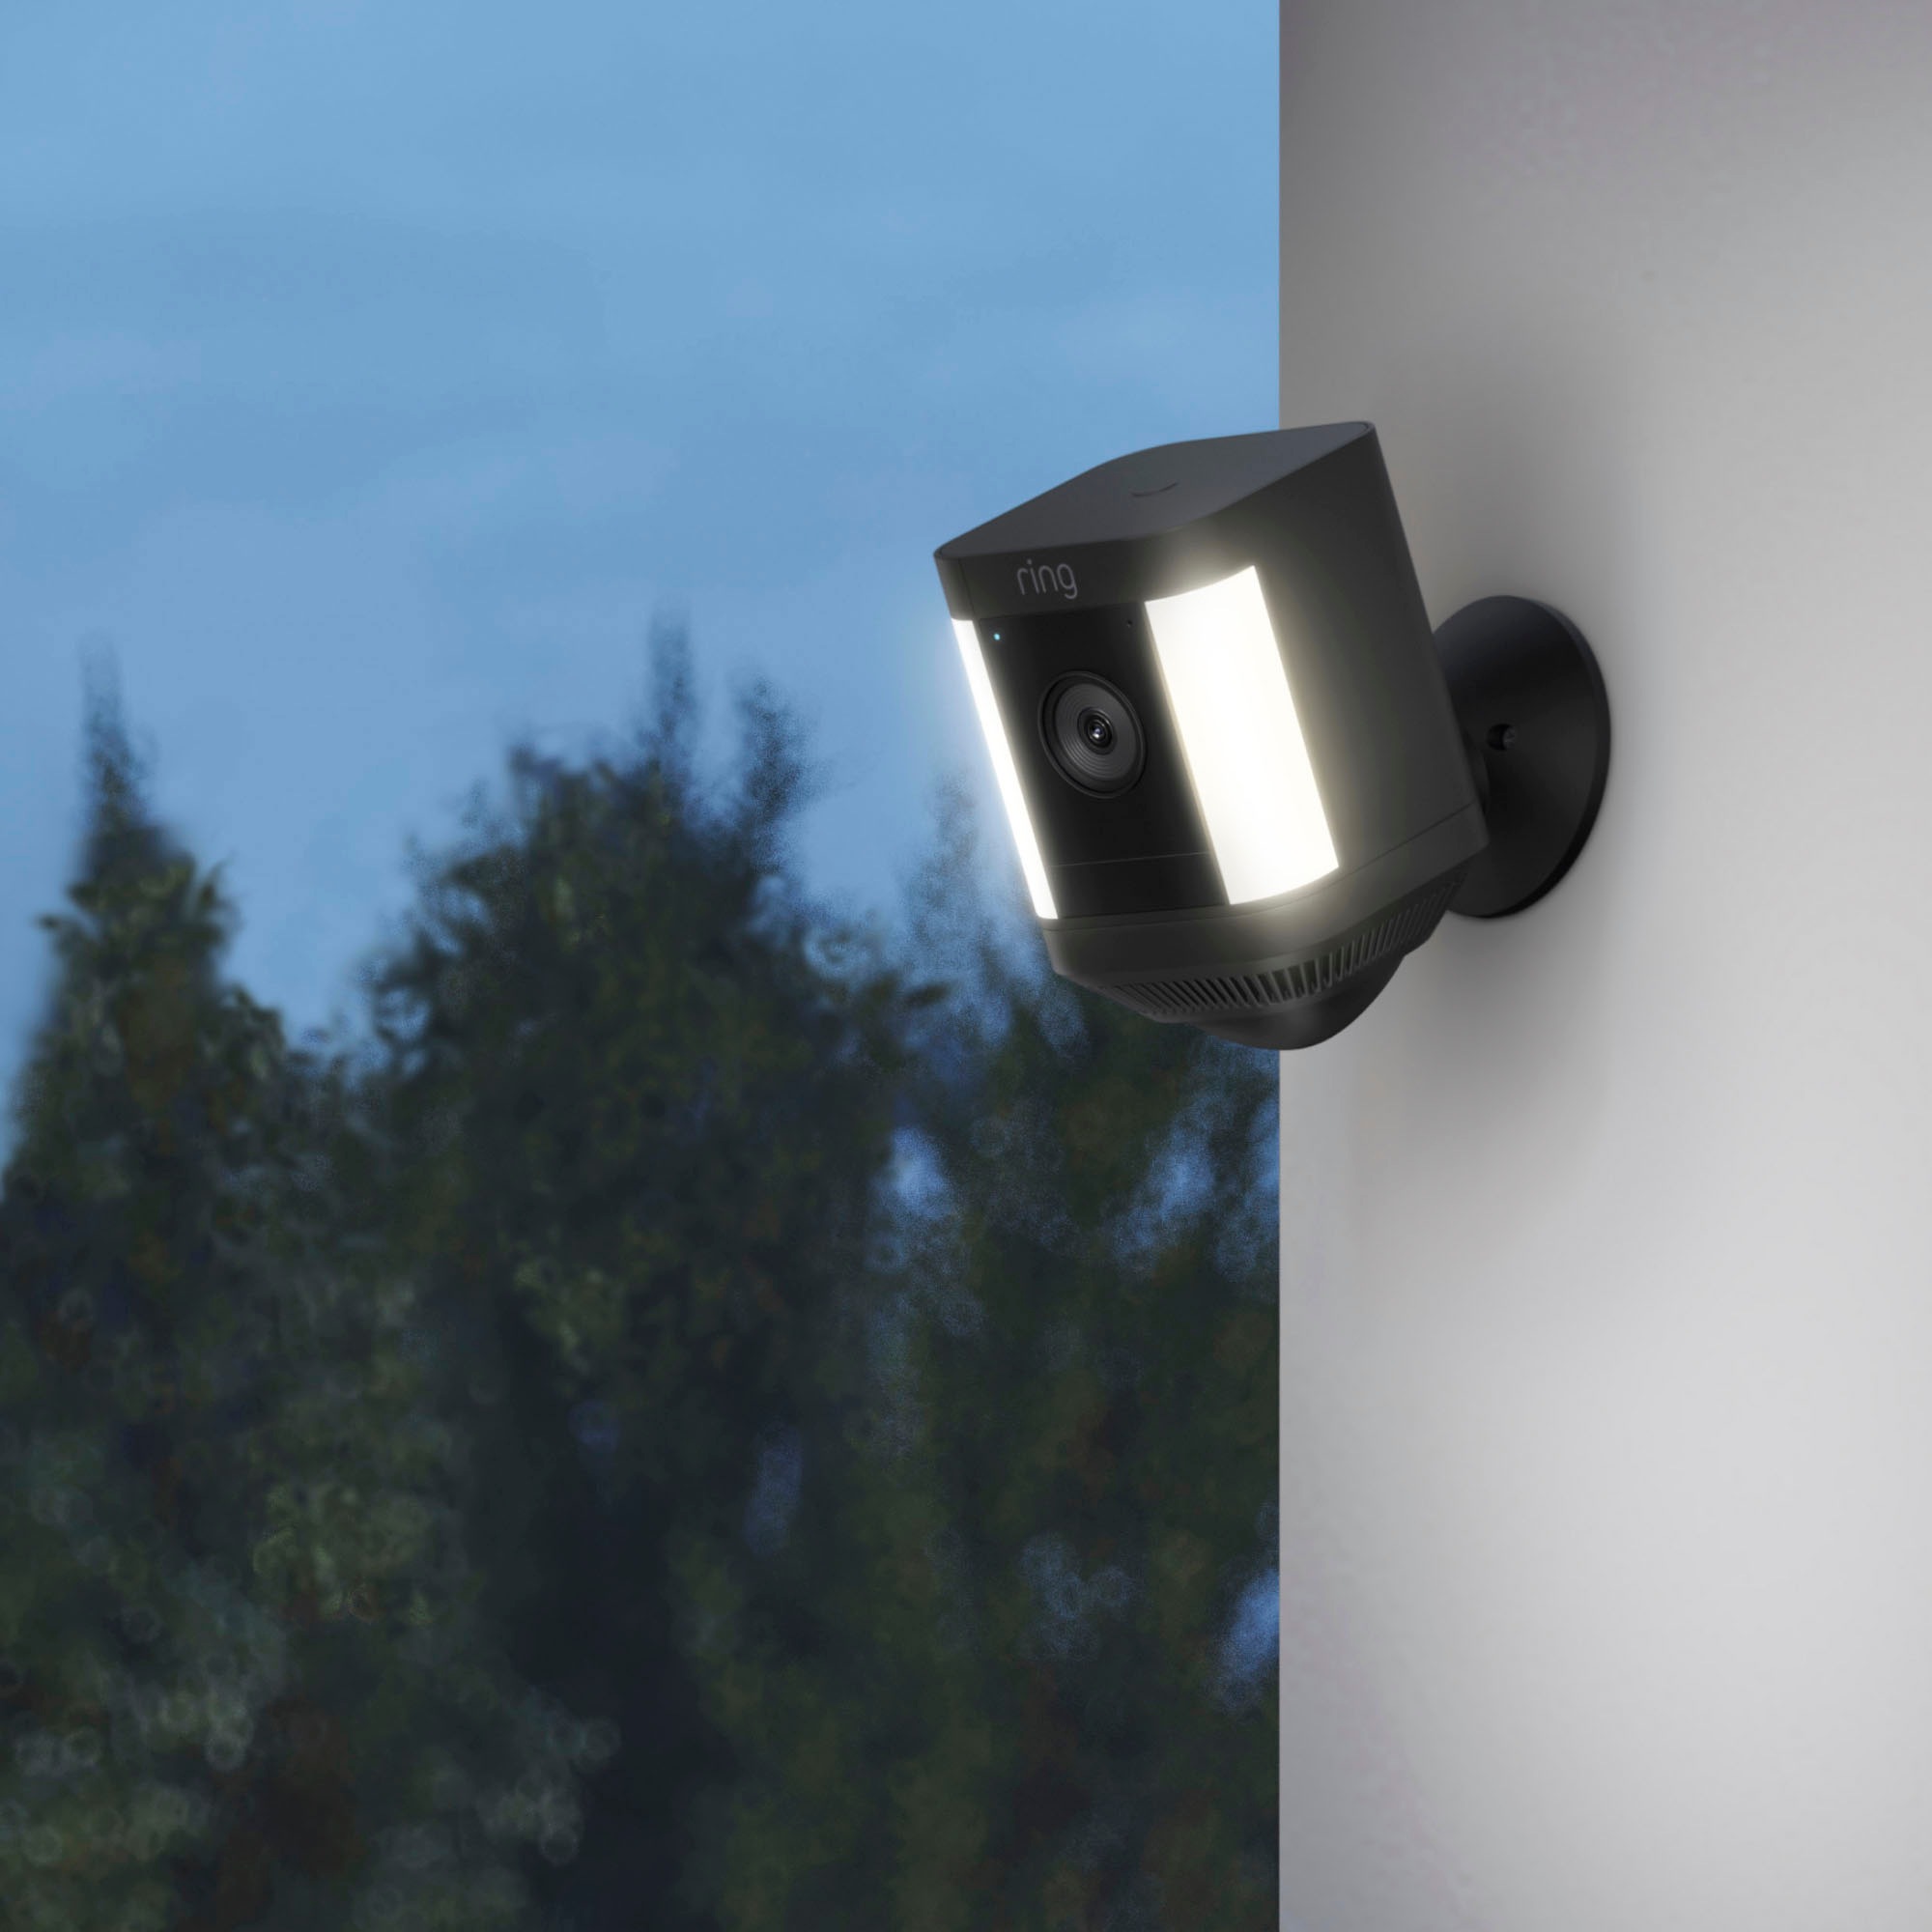 Ring Überwachungskamera »Spotlight Cam Plus Battery«, Außenbereich